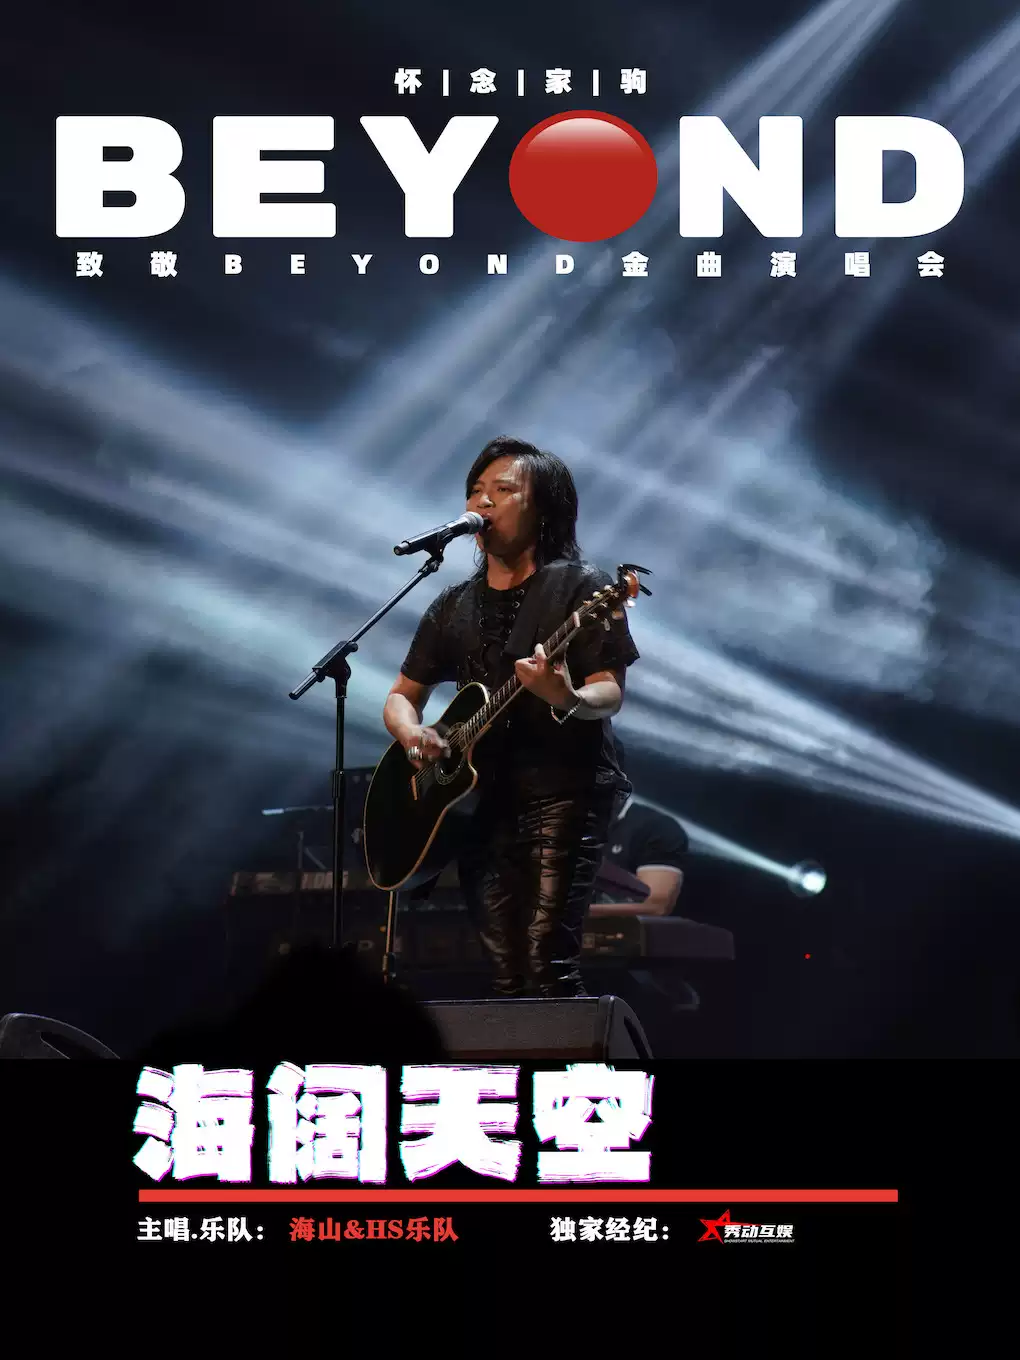 【北京】海阔天空 怀念家驹【海山】致敬BEYOND金曲演唱会